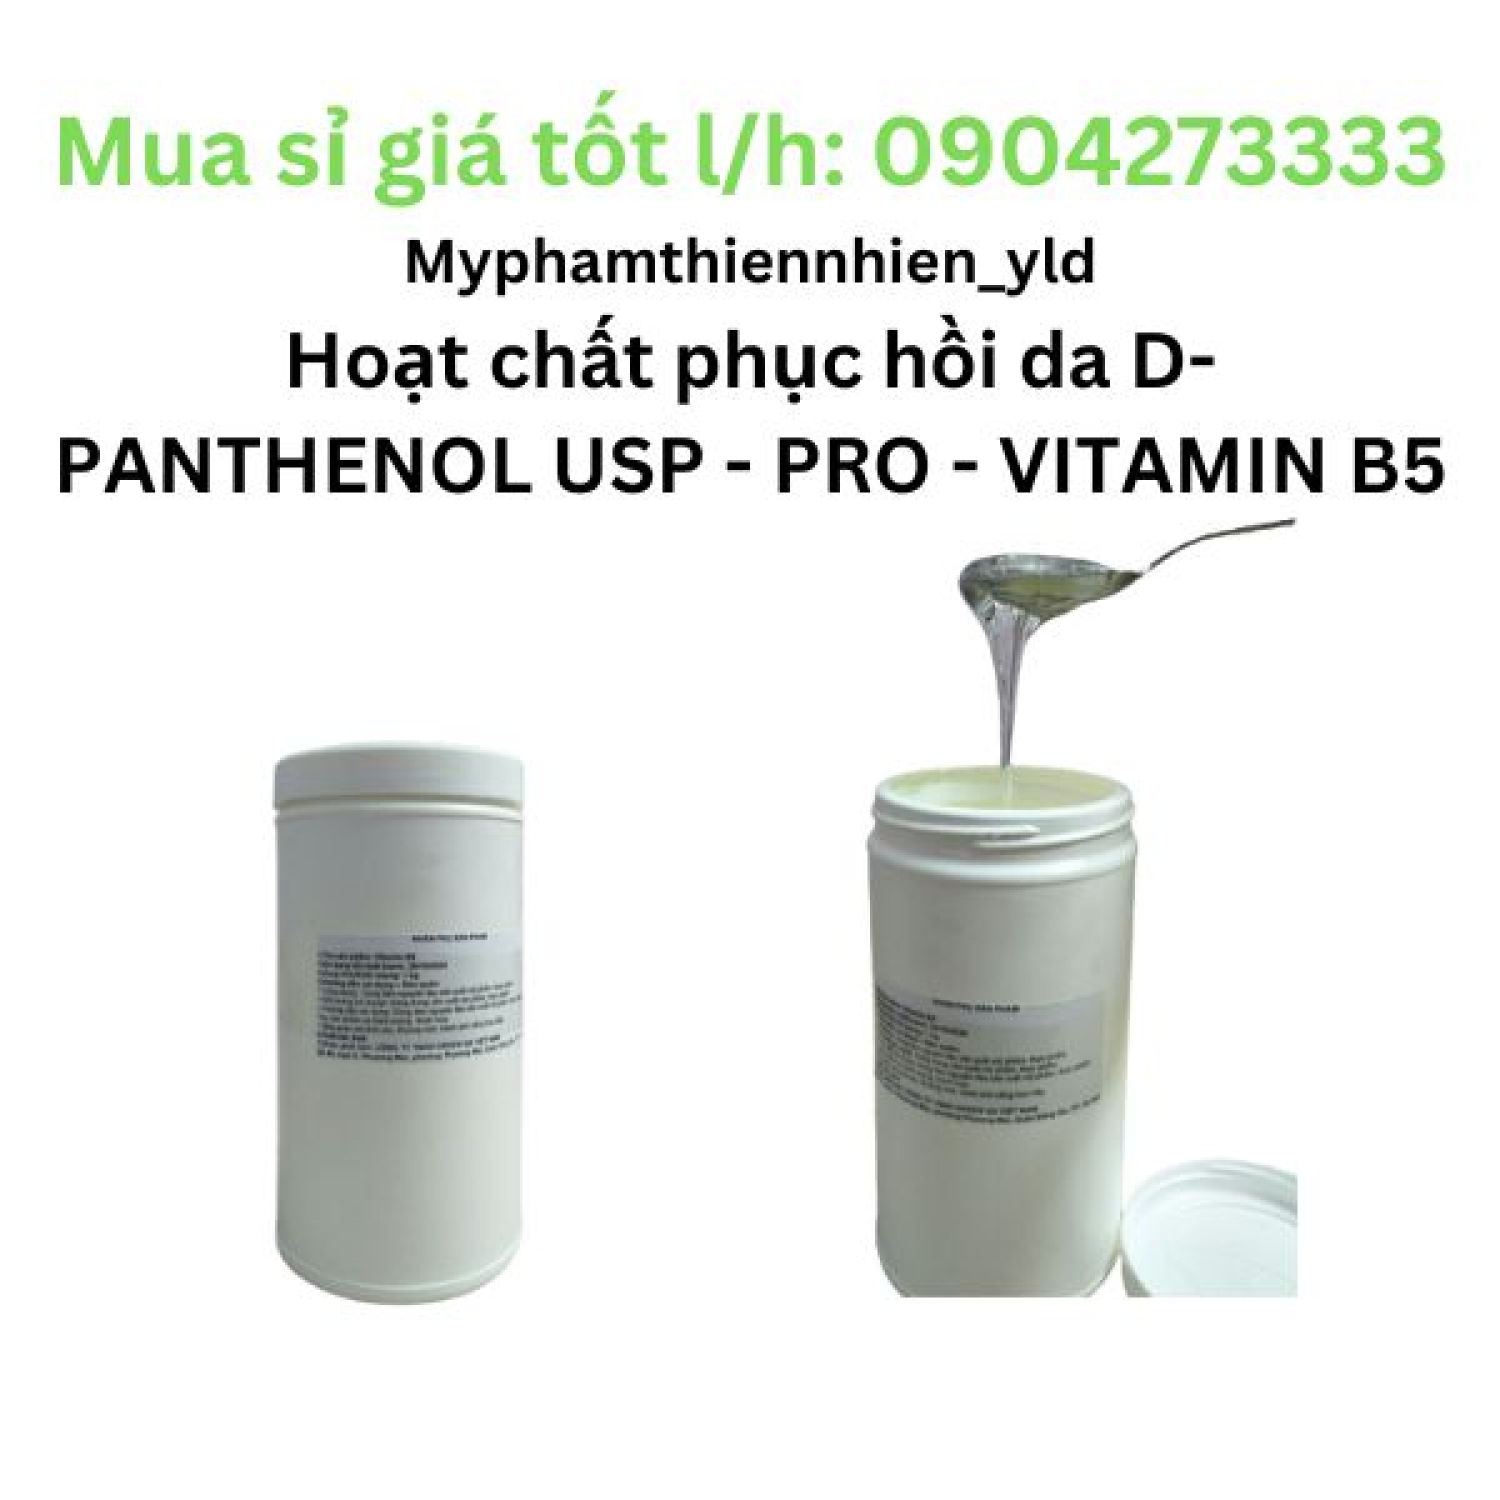 Hoạt chất phục hồi da D-PANTHENOL USP - PRO - VITAMIN B5-  Nguyên liệu mỹ phẩm - Đức